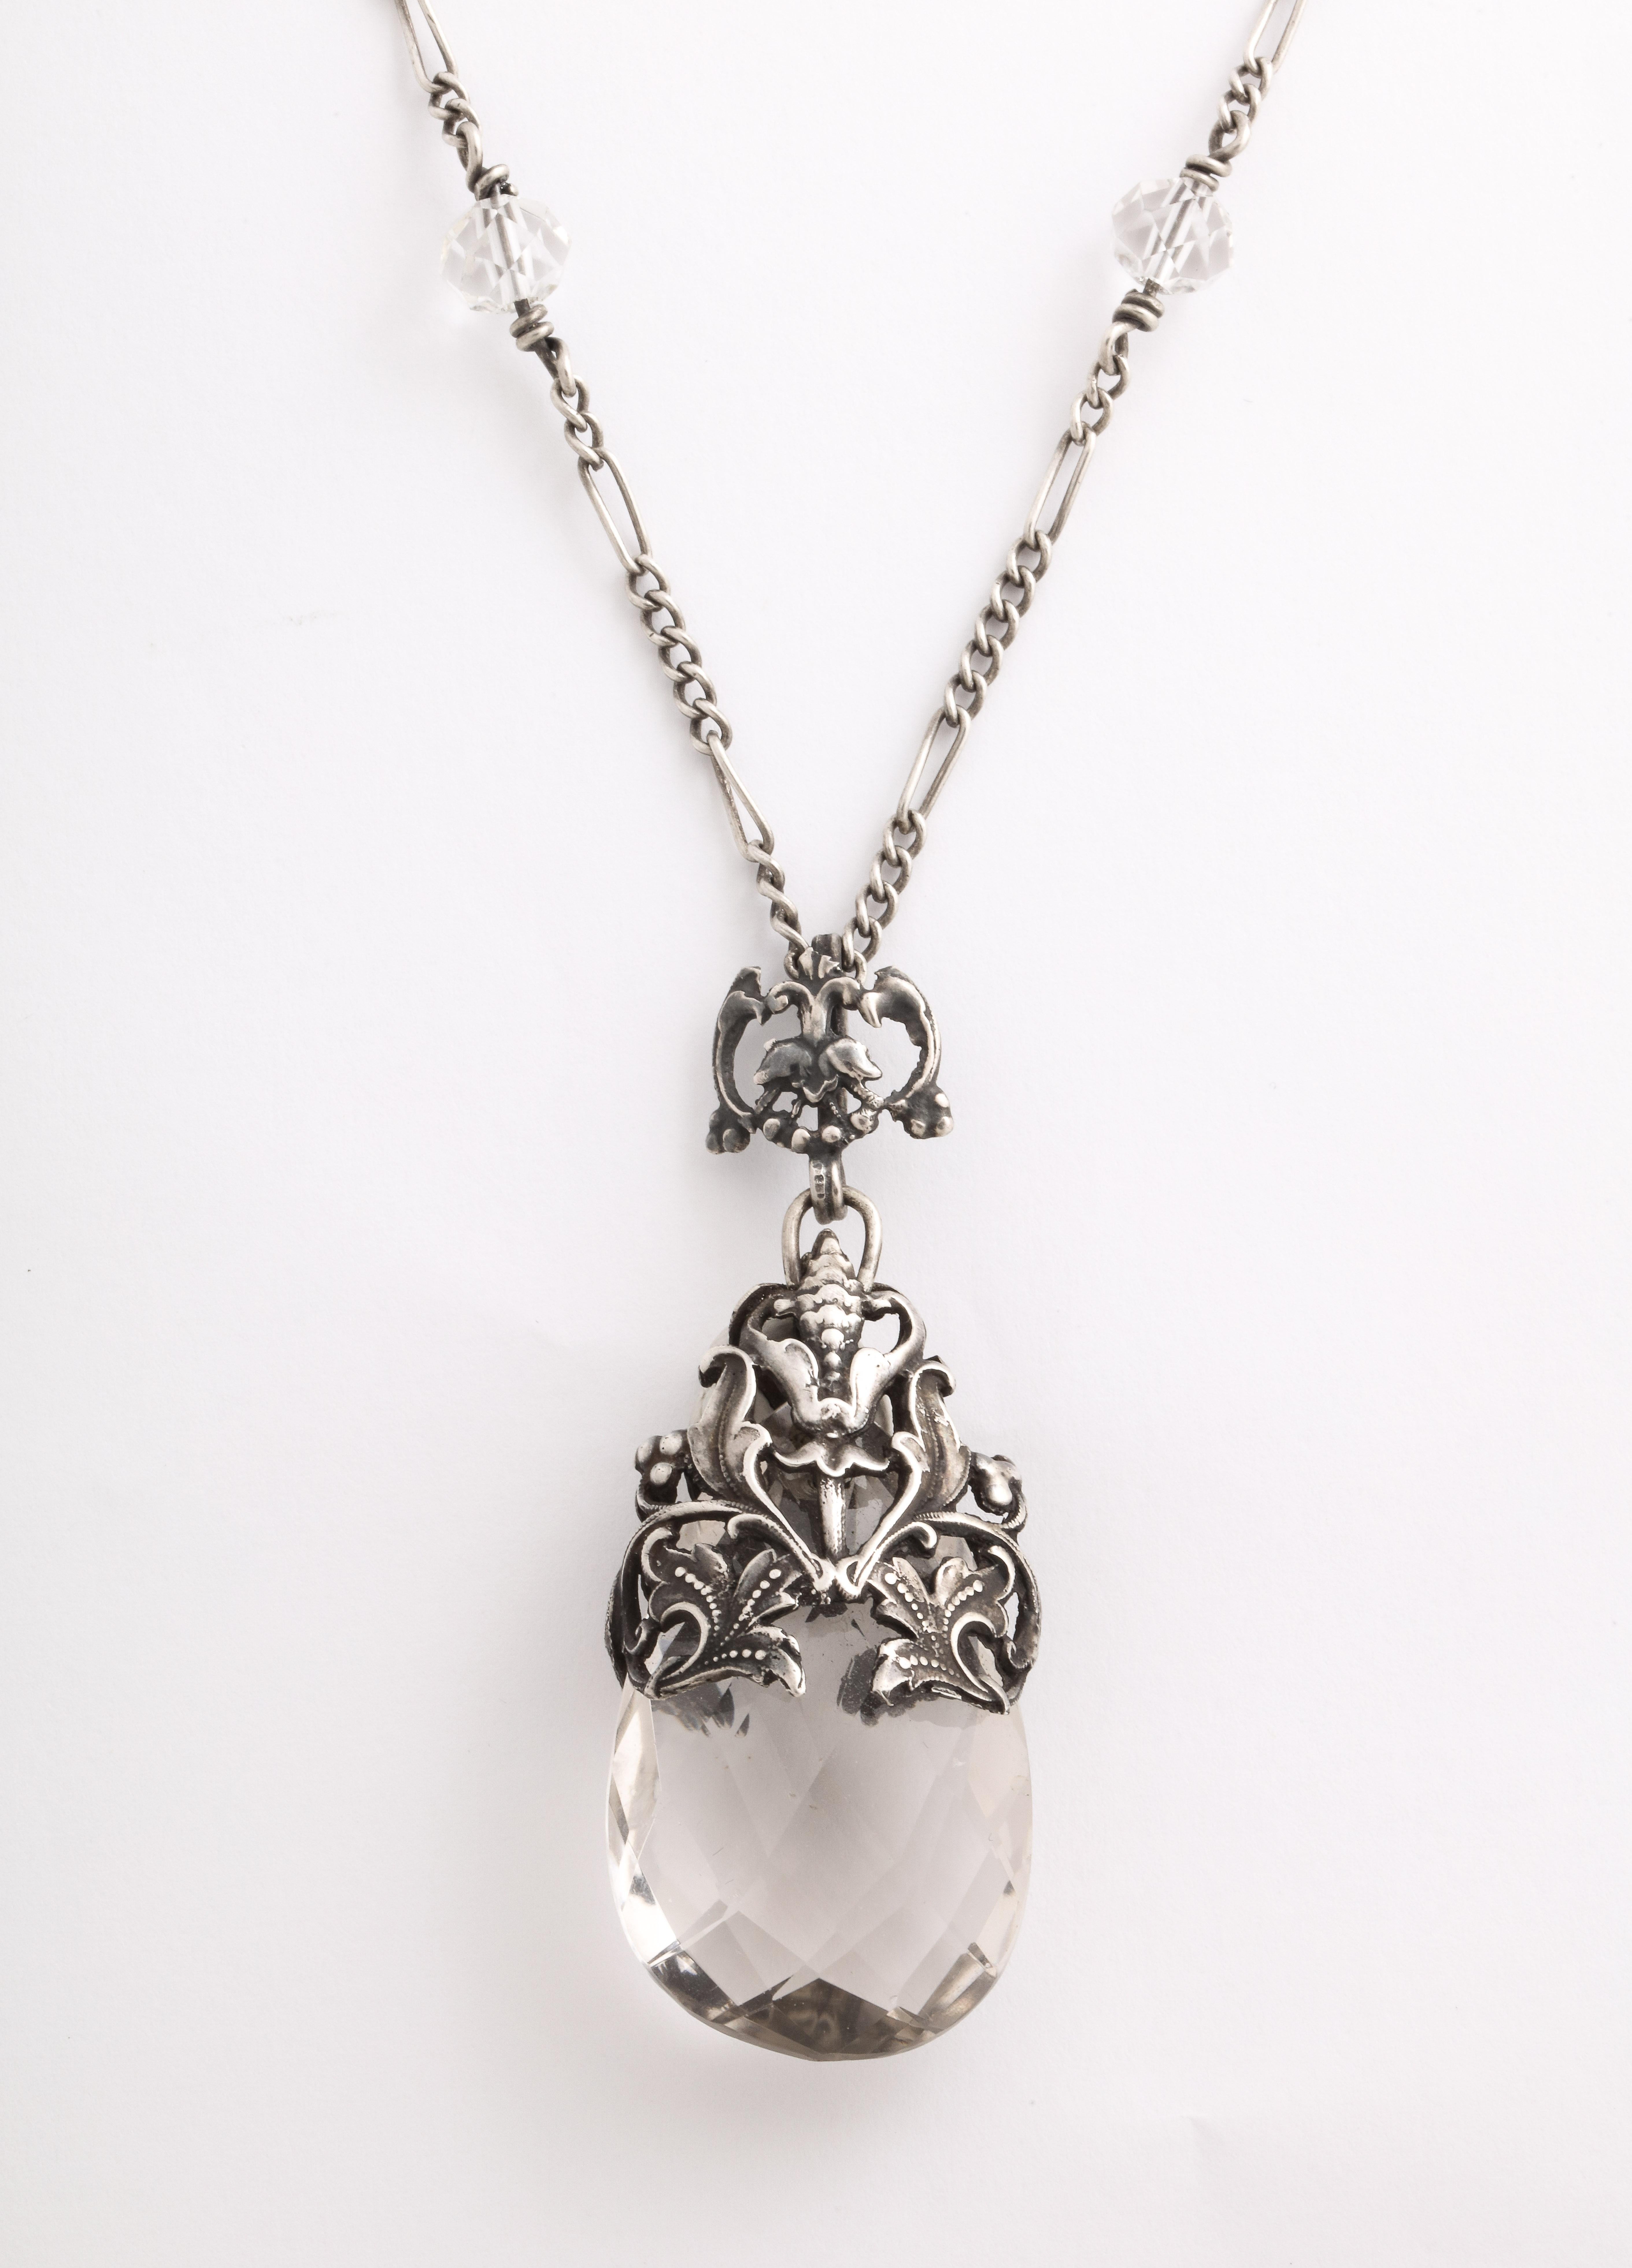 De style Art nouveau, ce collier en cristal de roche est magnifiquement conçu. Le cristal est gracieusement enveloppé dans des feuilles et des bourgeons gravés en acier inoxydable. Le cristal de roche est facetté en diagonale. La chaîne est